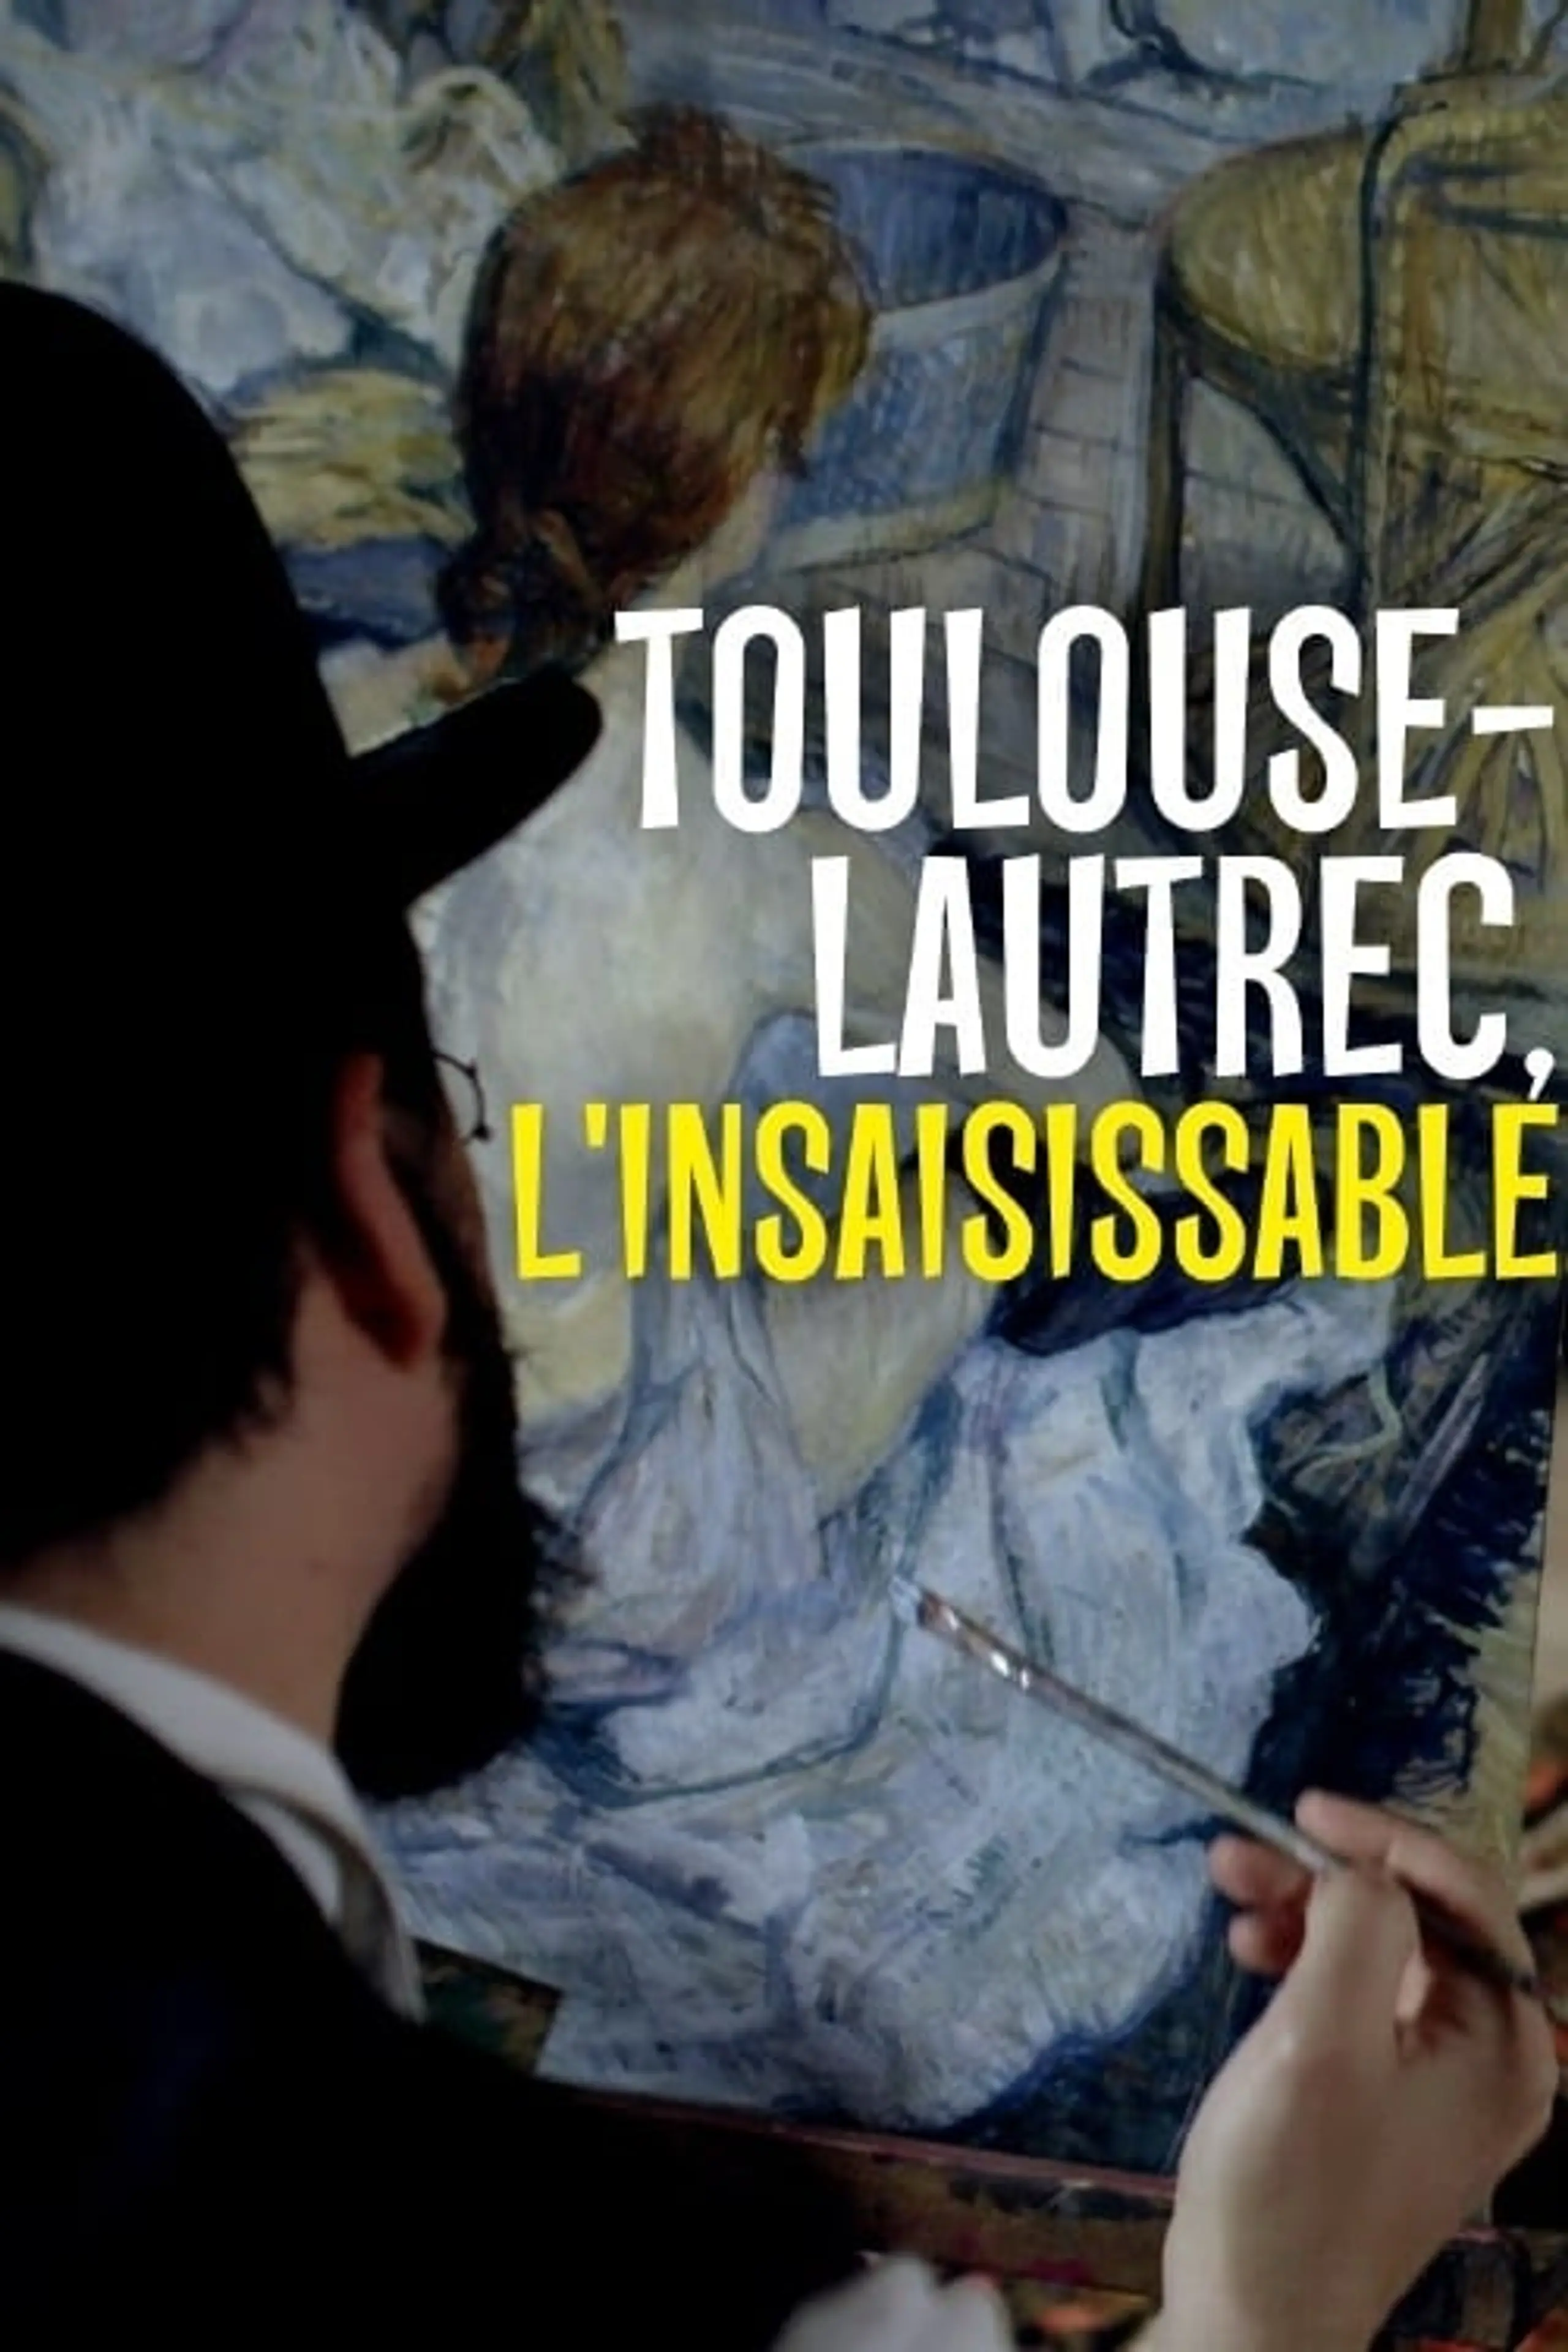 Toulouse-Lautrec - Der Tausendsassa